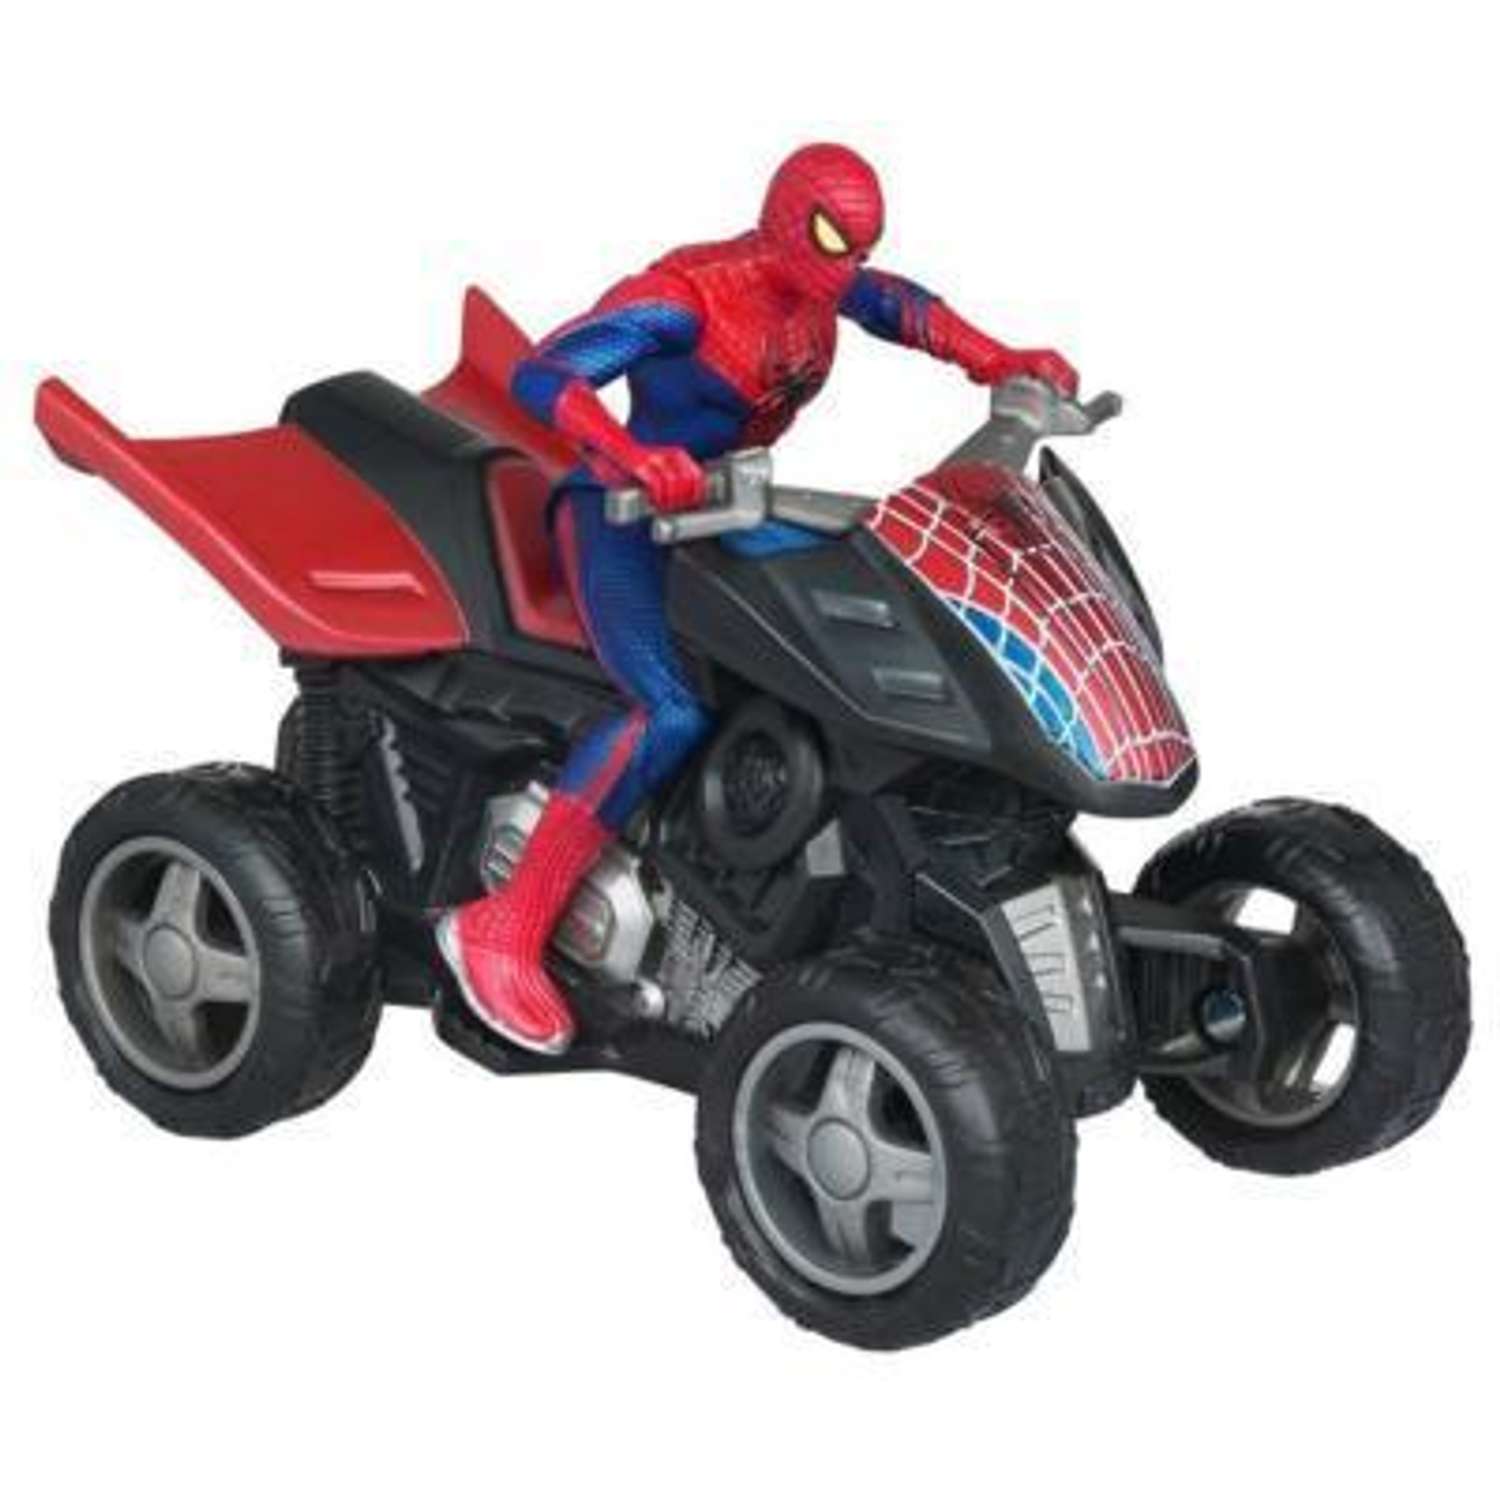 Фигурка Человек-Паук (Spider-man) Человек-паук на транспортном средстве в ассортименте - фото 2